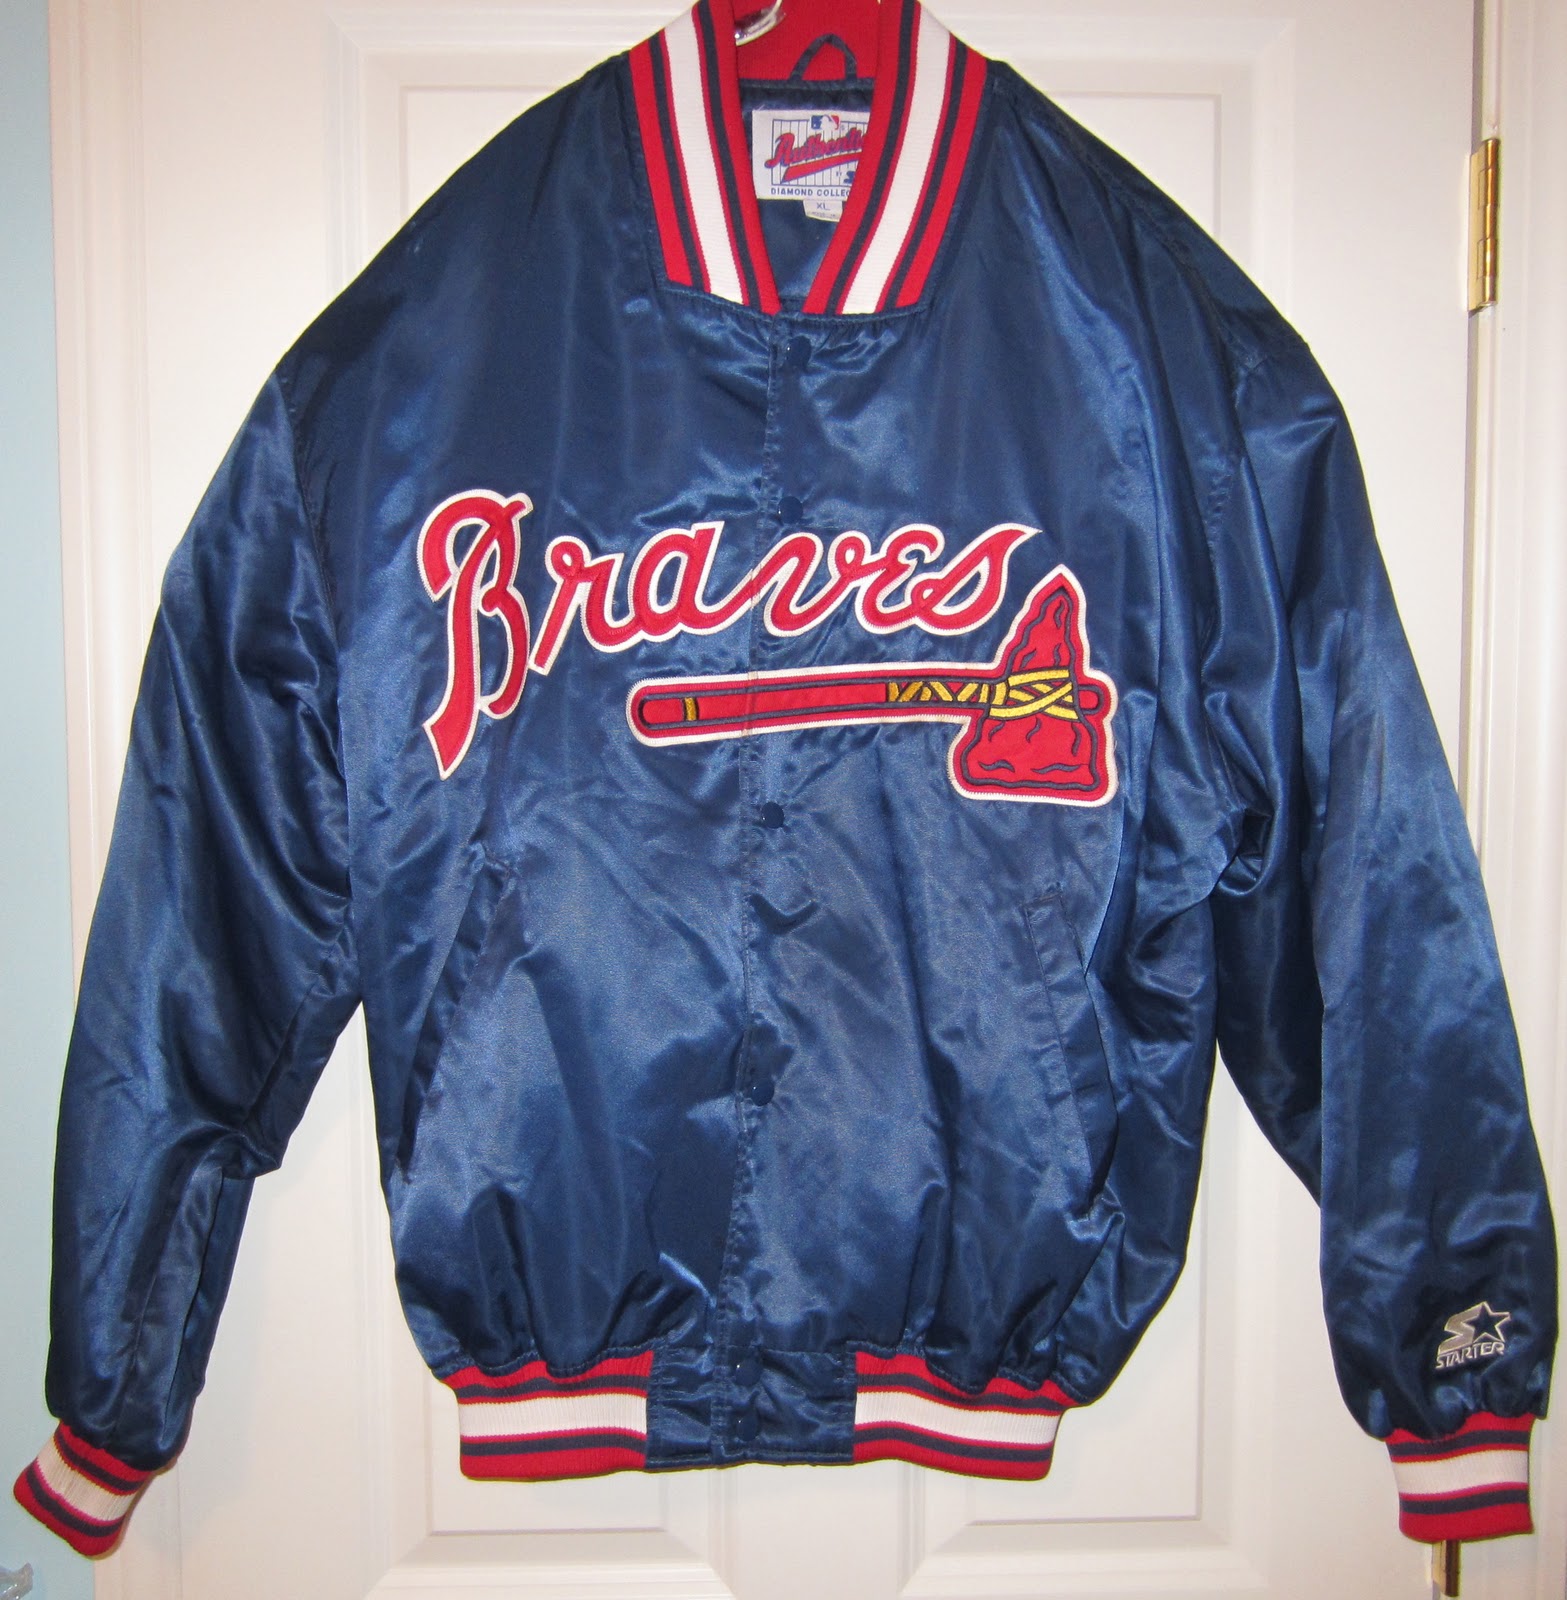 Vintage Sports Apparel: Vintage Atlanta Braves Starter Jacket - SOLD OUT